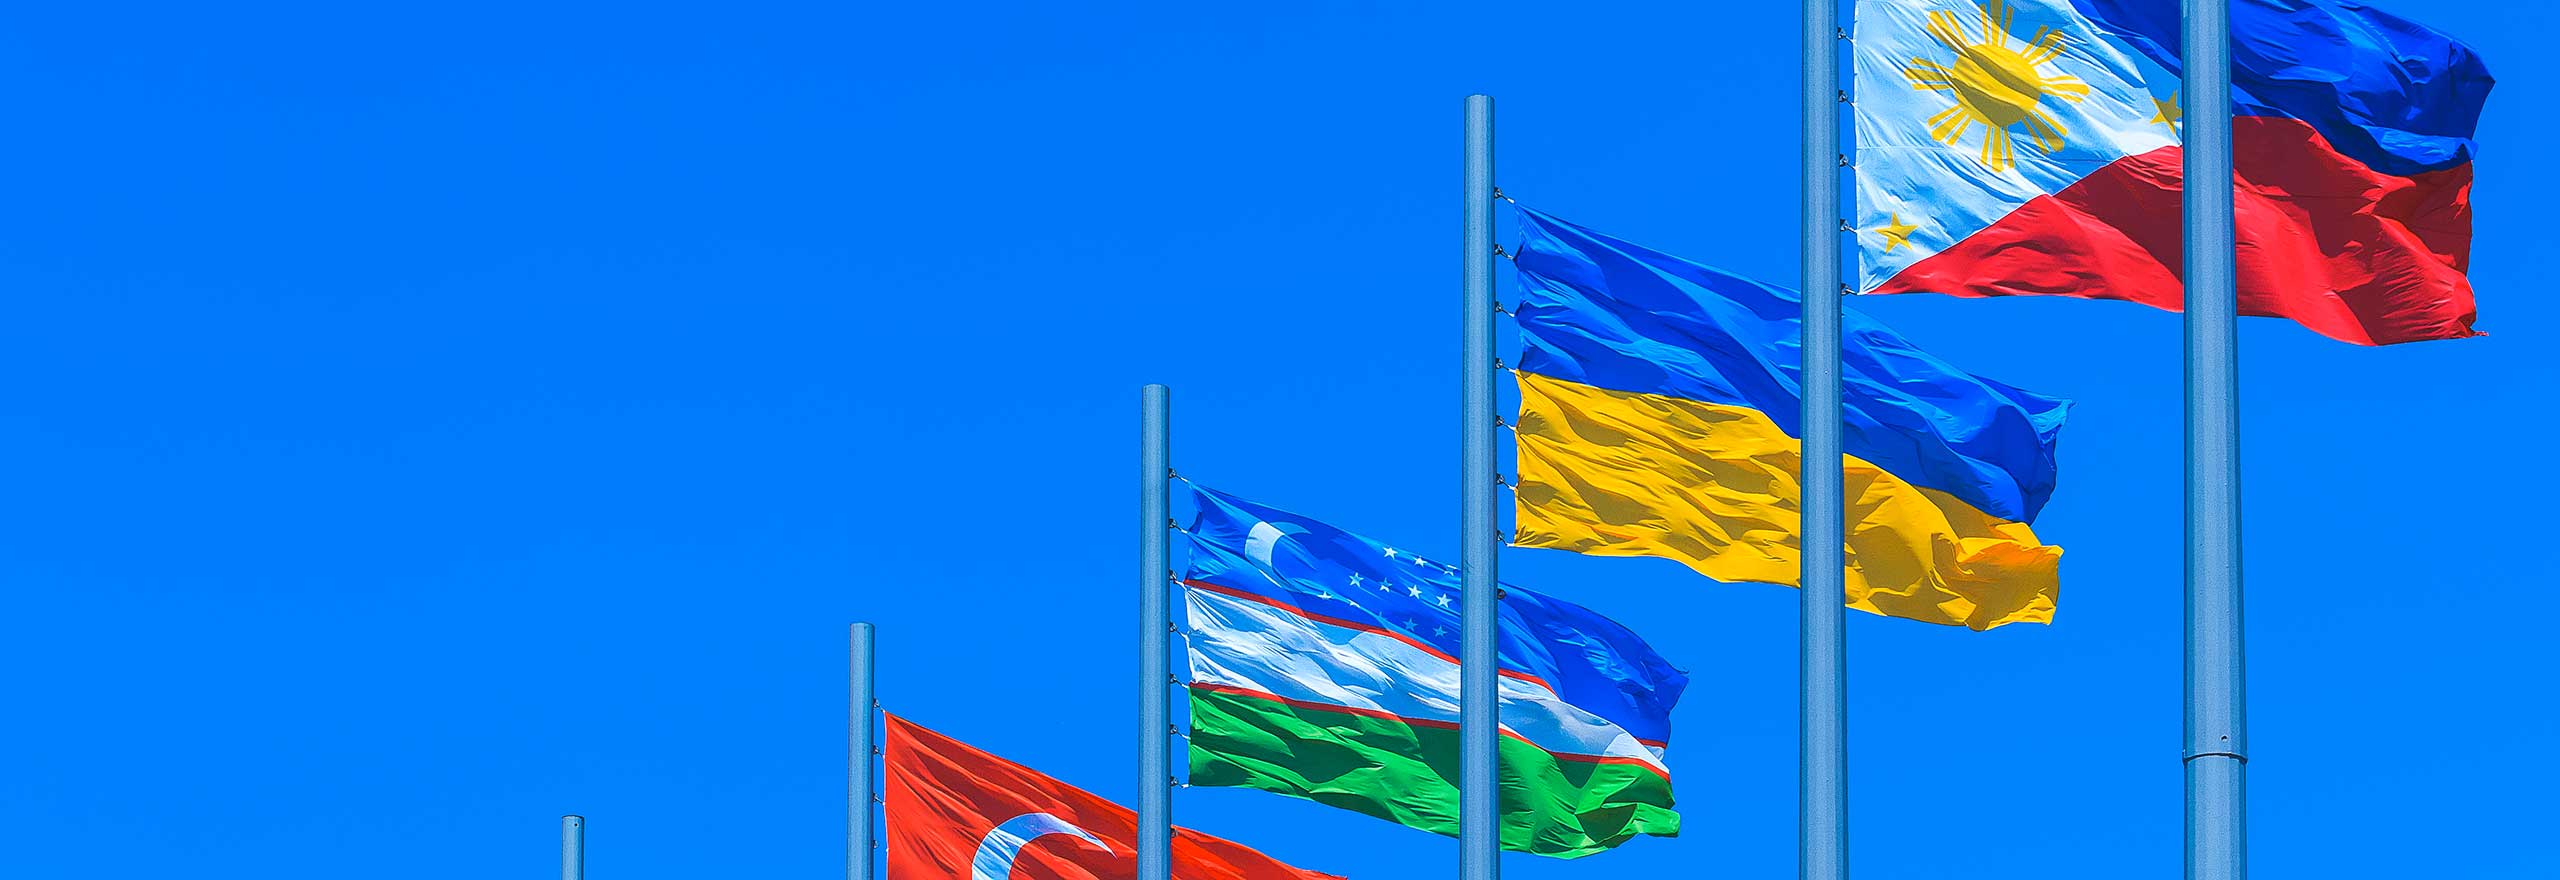 Banderas de varios países que vuelan bajo un cielo azul